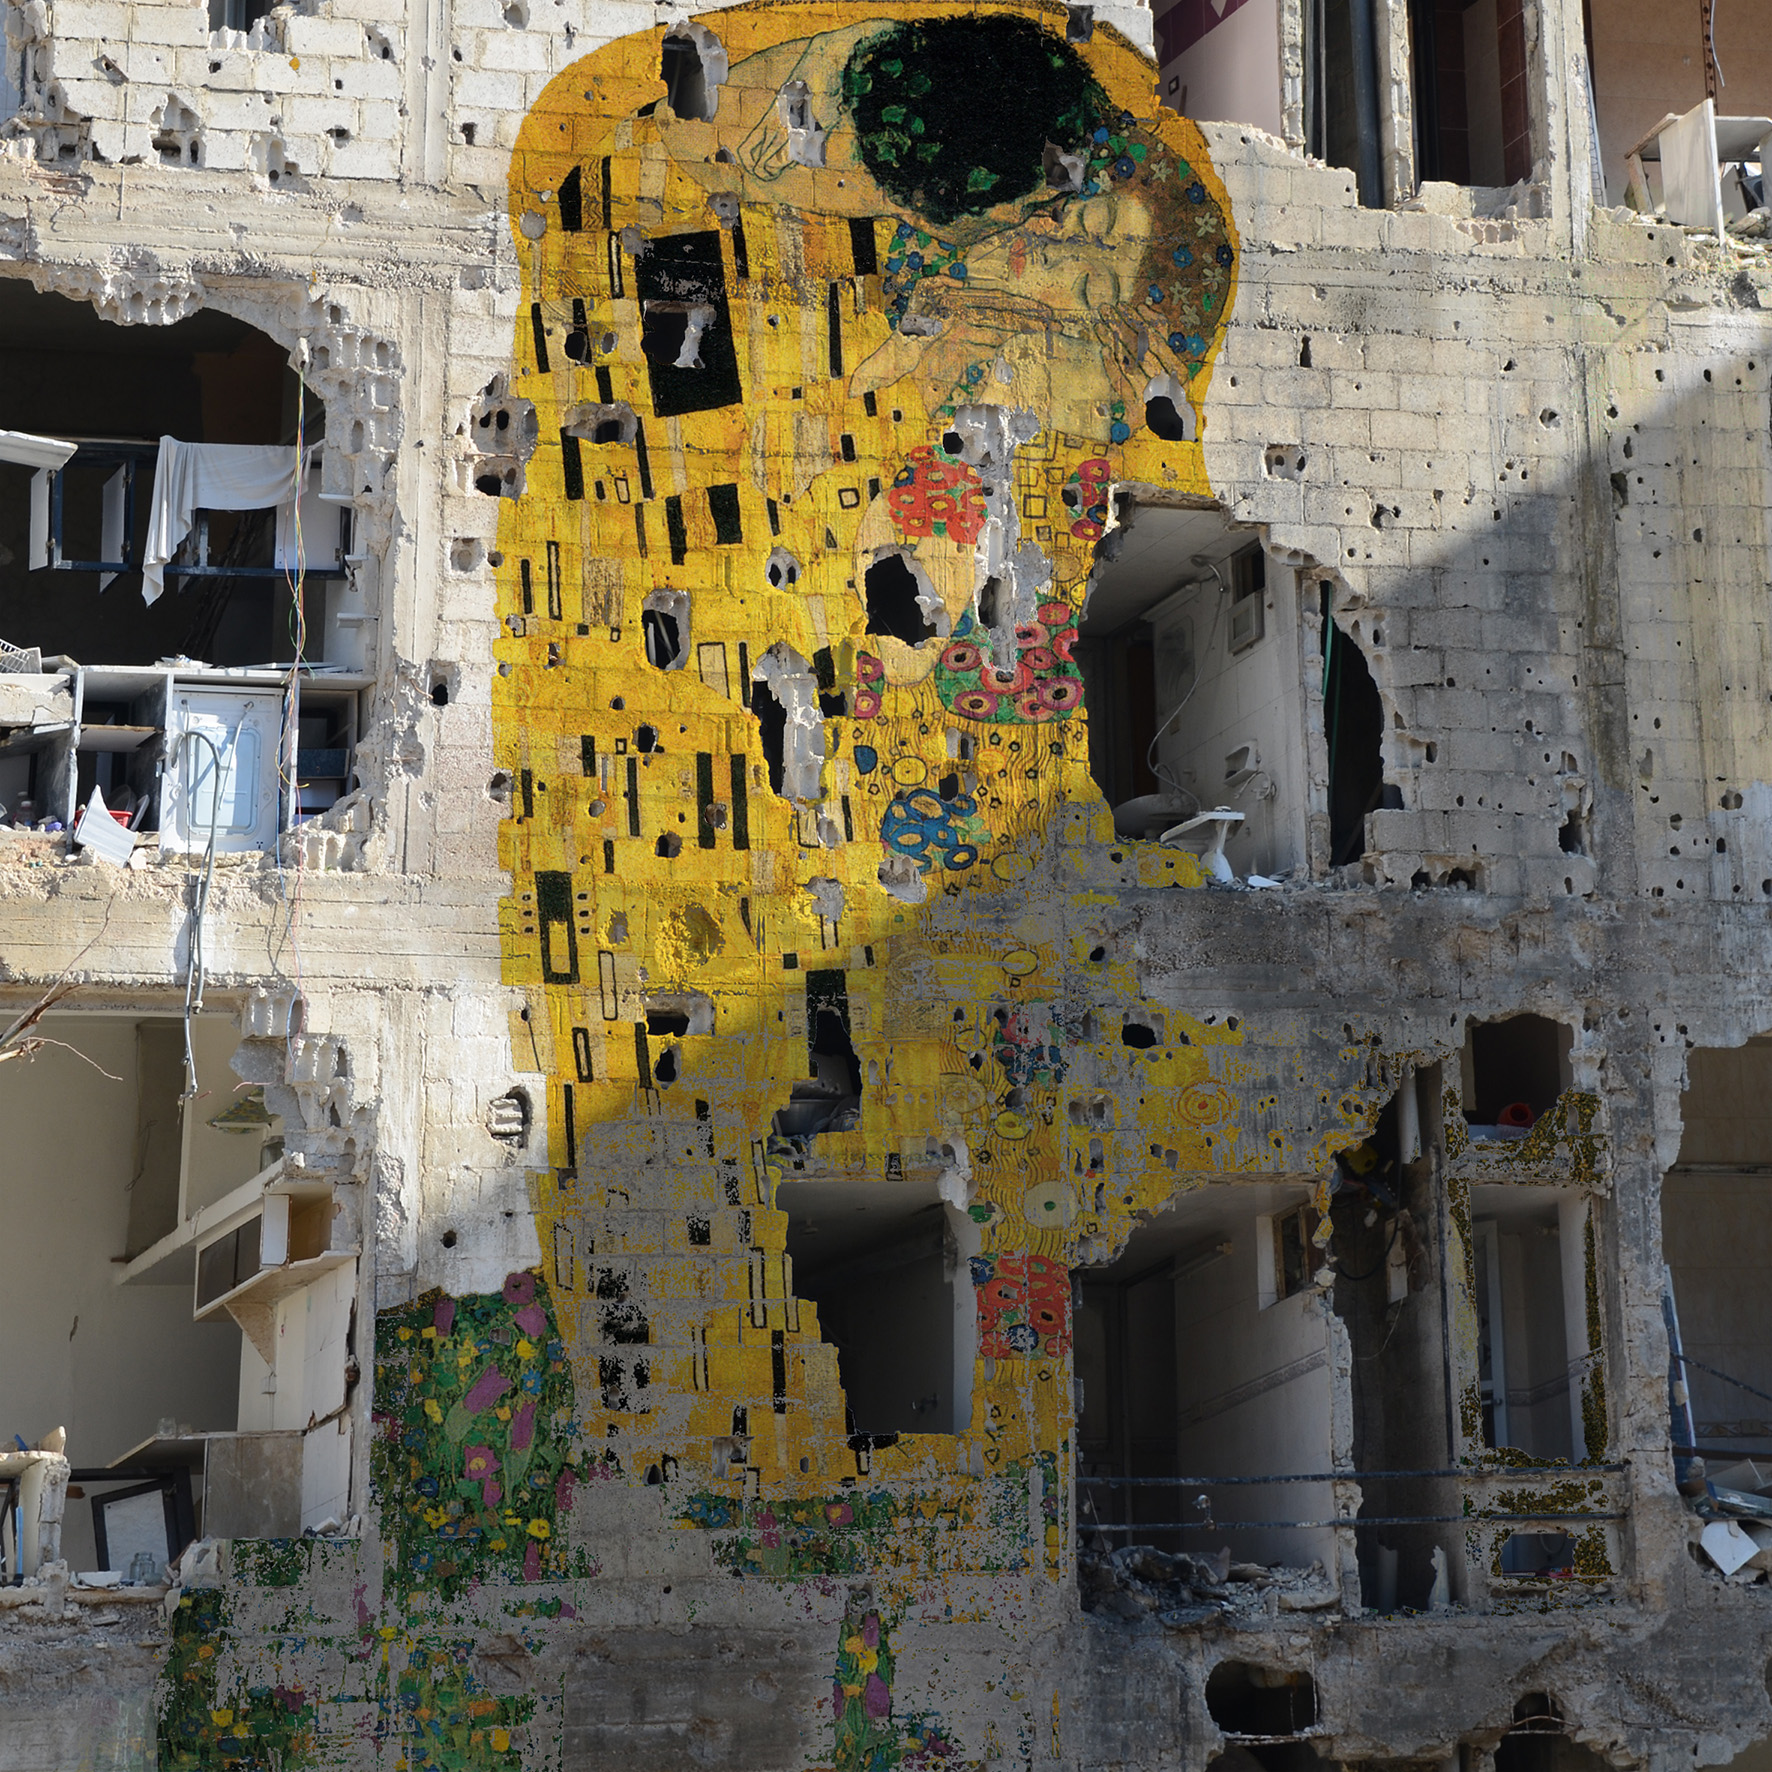 Klimt, Graffiti svobody (Freedom Graffiti) by Tammam Azzam - 2013 